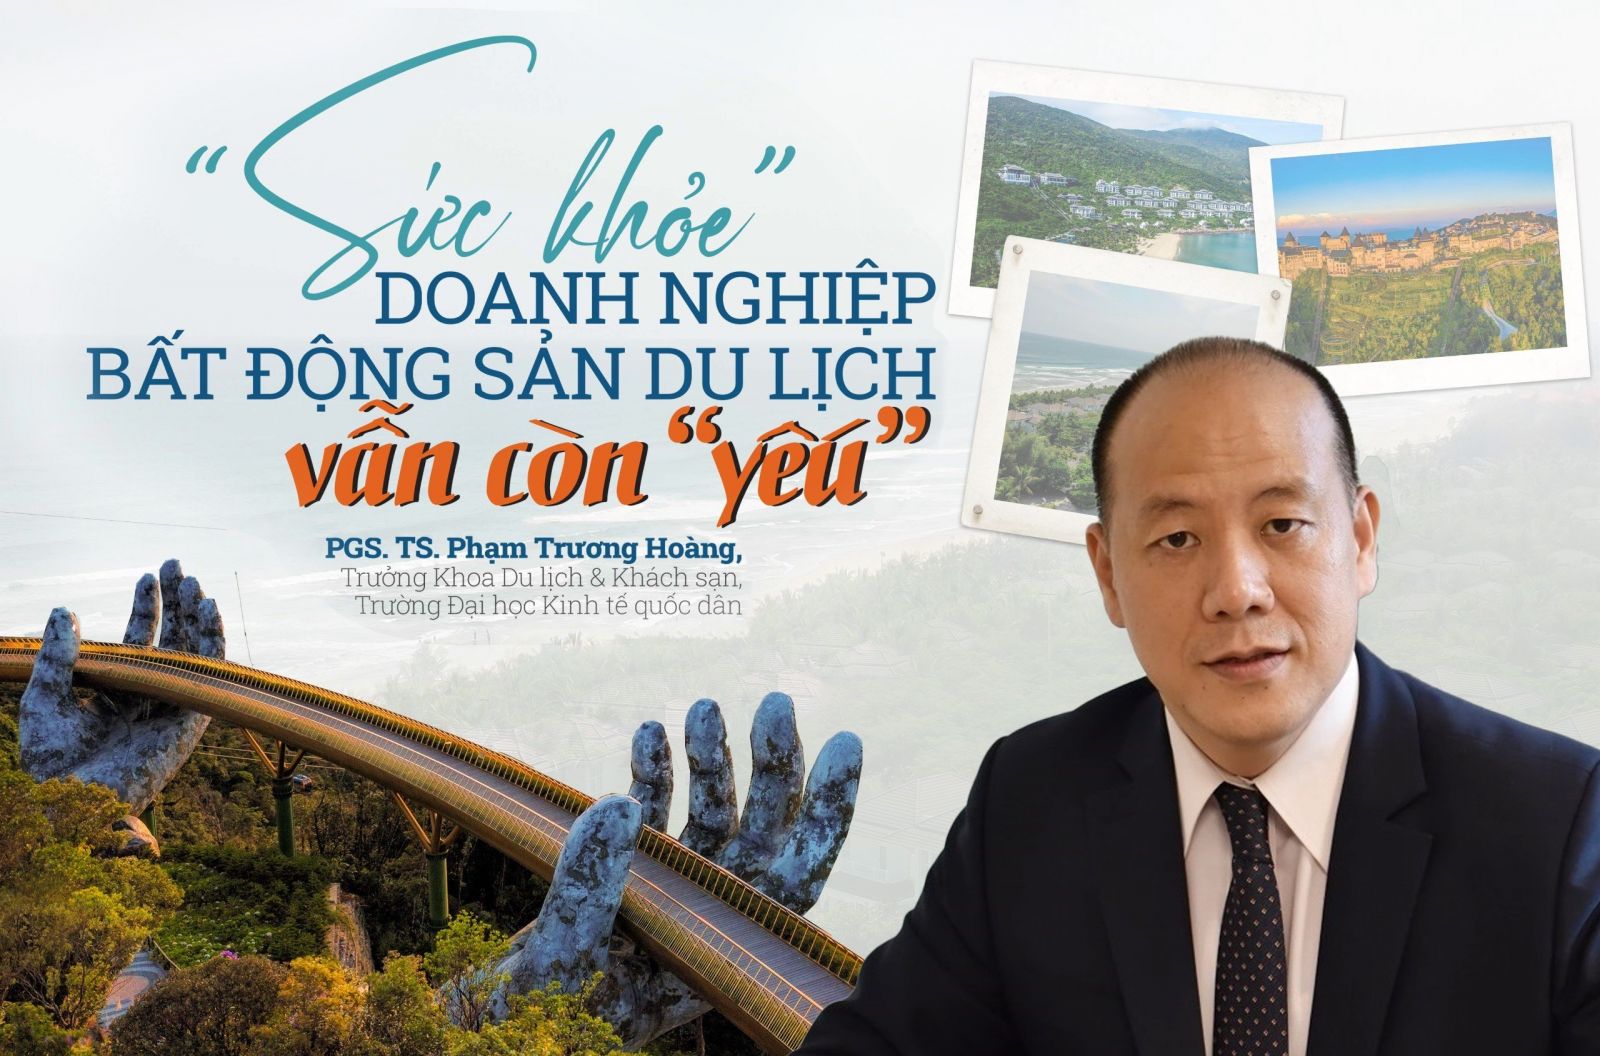 PGS. TS. Phạm Trương Hoàng: “Sức khoẻ” doanh nghiệp bất động sản du lịch vẫn còn “yếu”